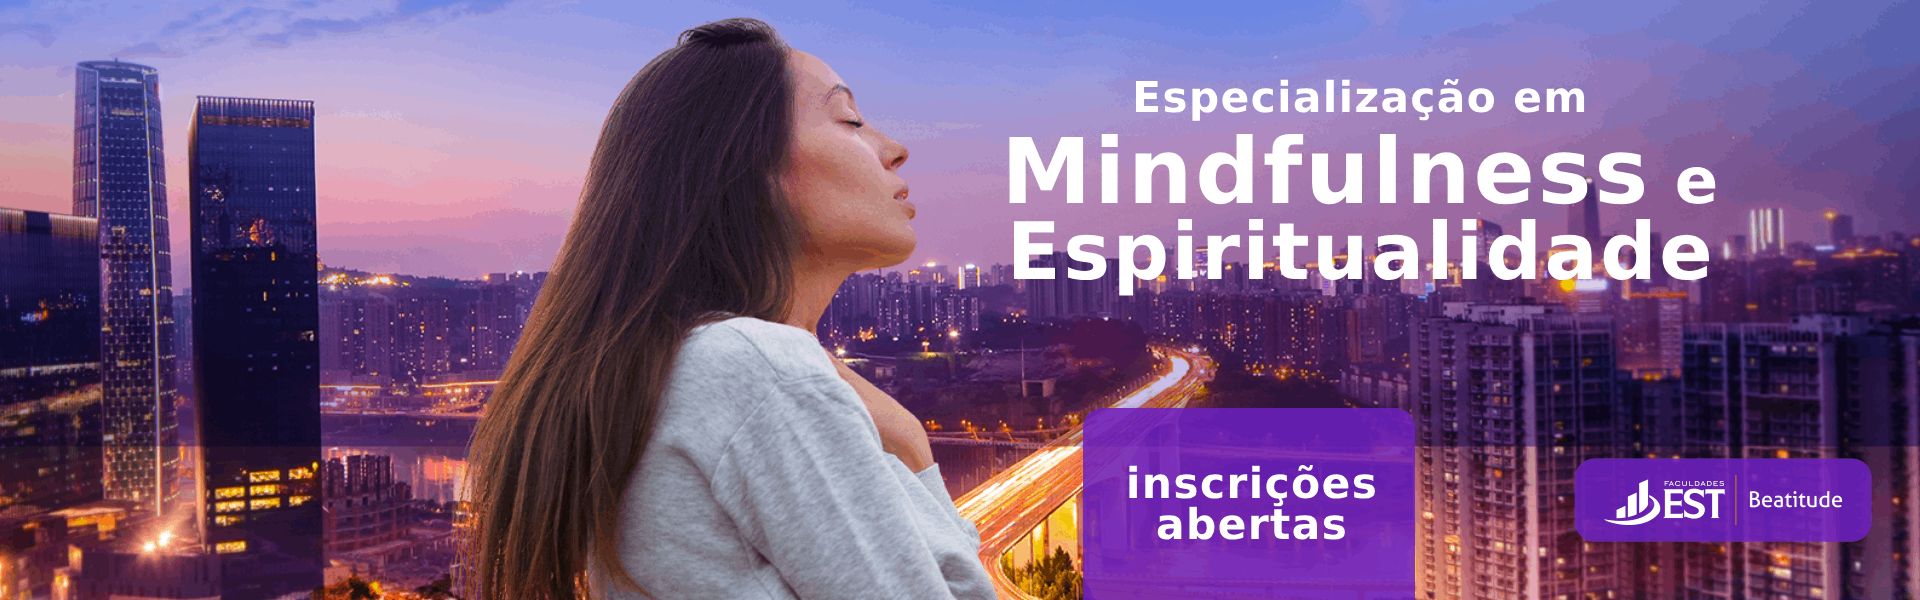 Banner Mindfulness e Espiritualidade 3 edicao sRGB 1920x600px_EDITAVEL (1)